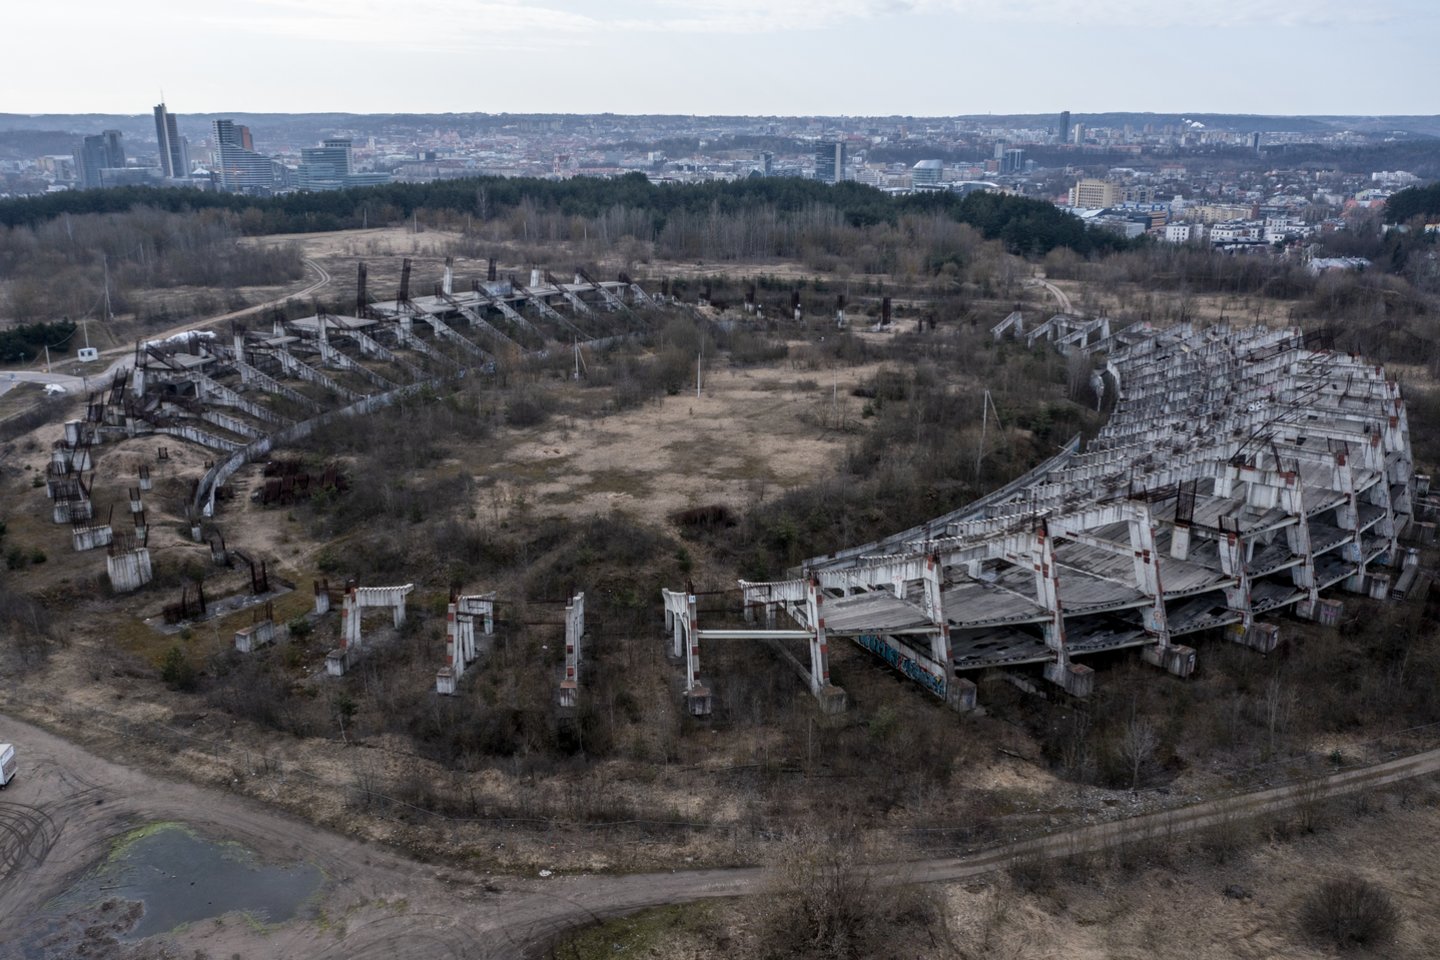 Vilniaus savivaldybės taryba spalio 6 dieną svarstė, ar pritarti pakoreguotai nacionalinio stadiono koncesijos sutarčiai.<br>V.Ščiavinsko nuotr.